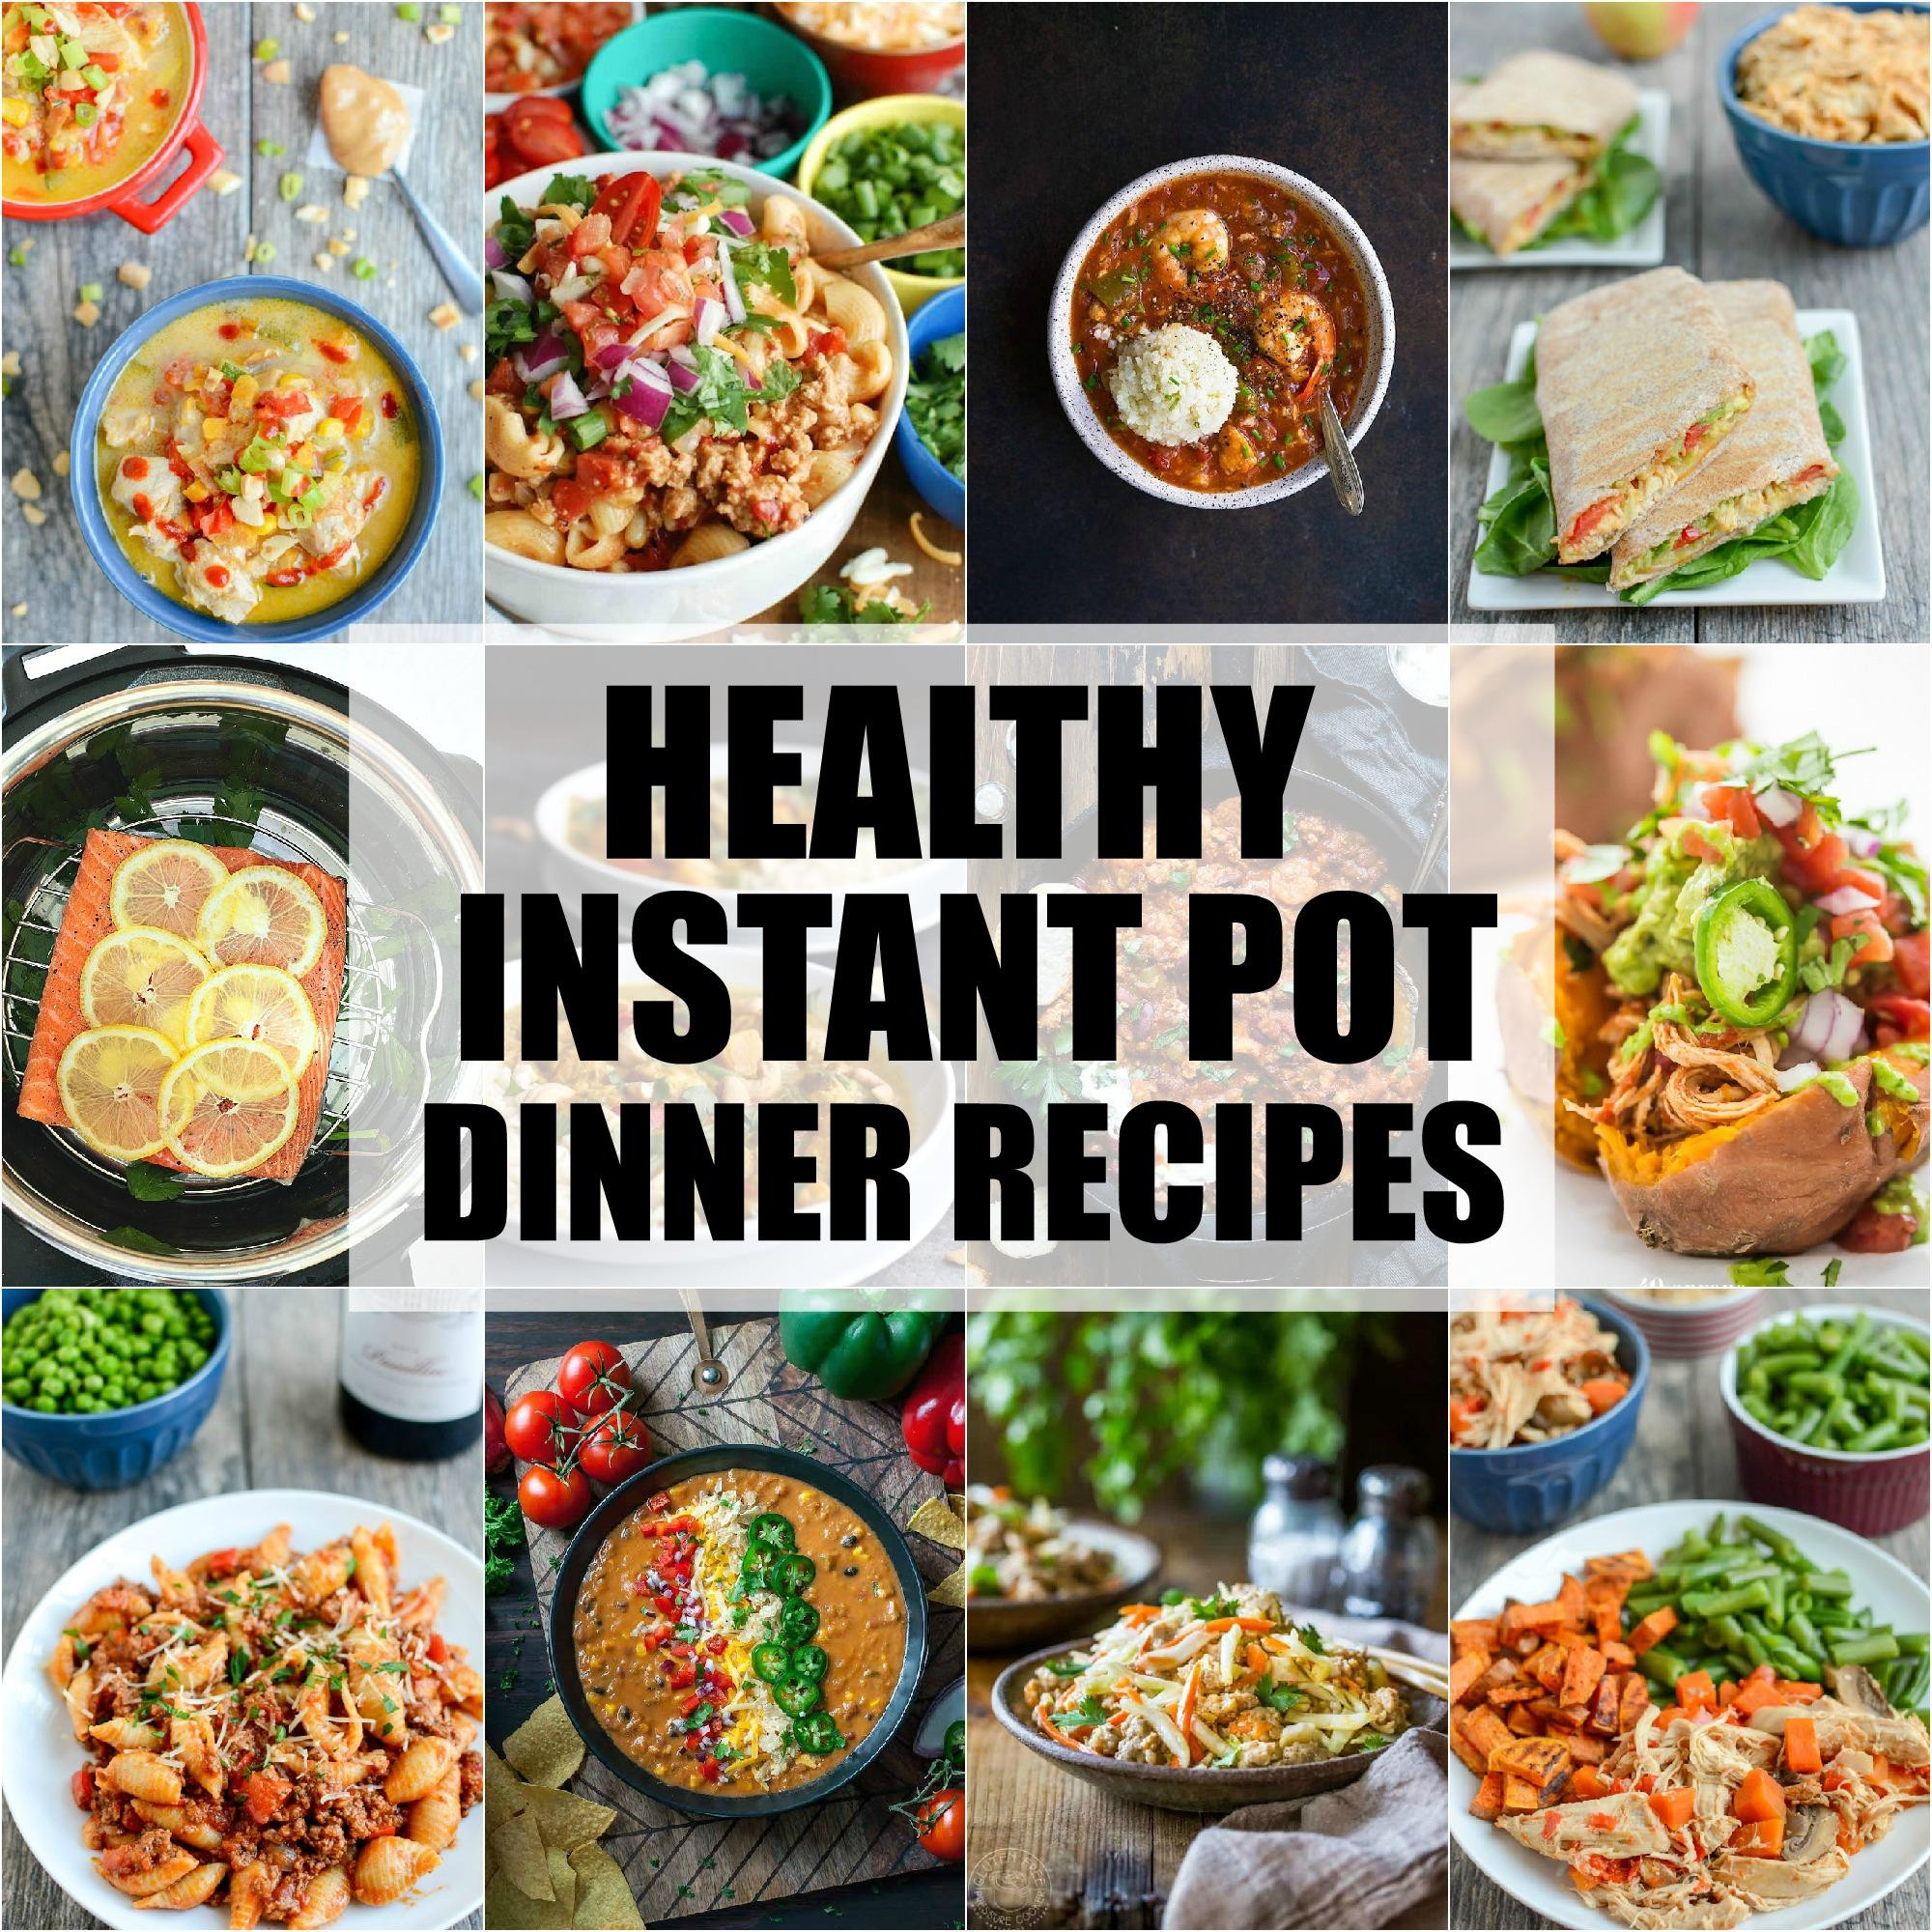 Instant Pot Recipes Healthy
 Healthy Instant Pot Dinner Recipes